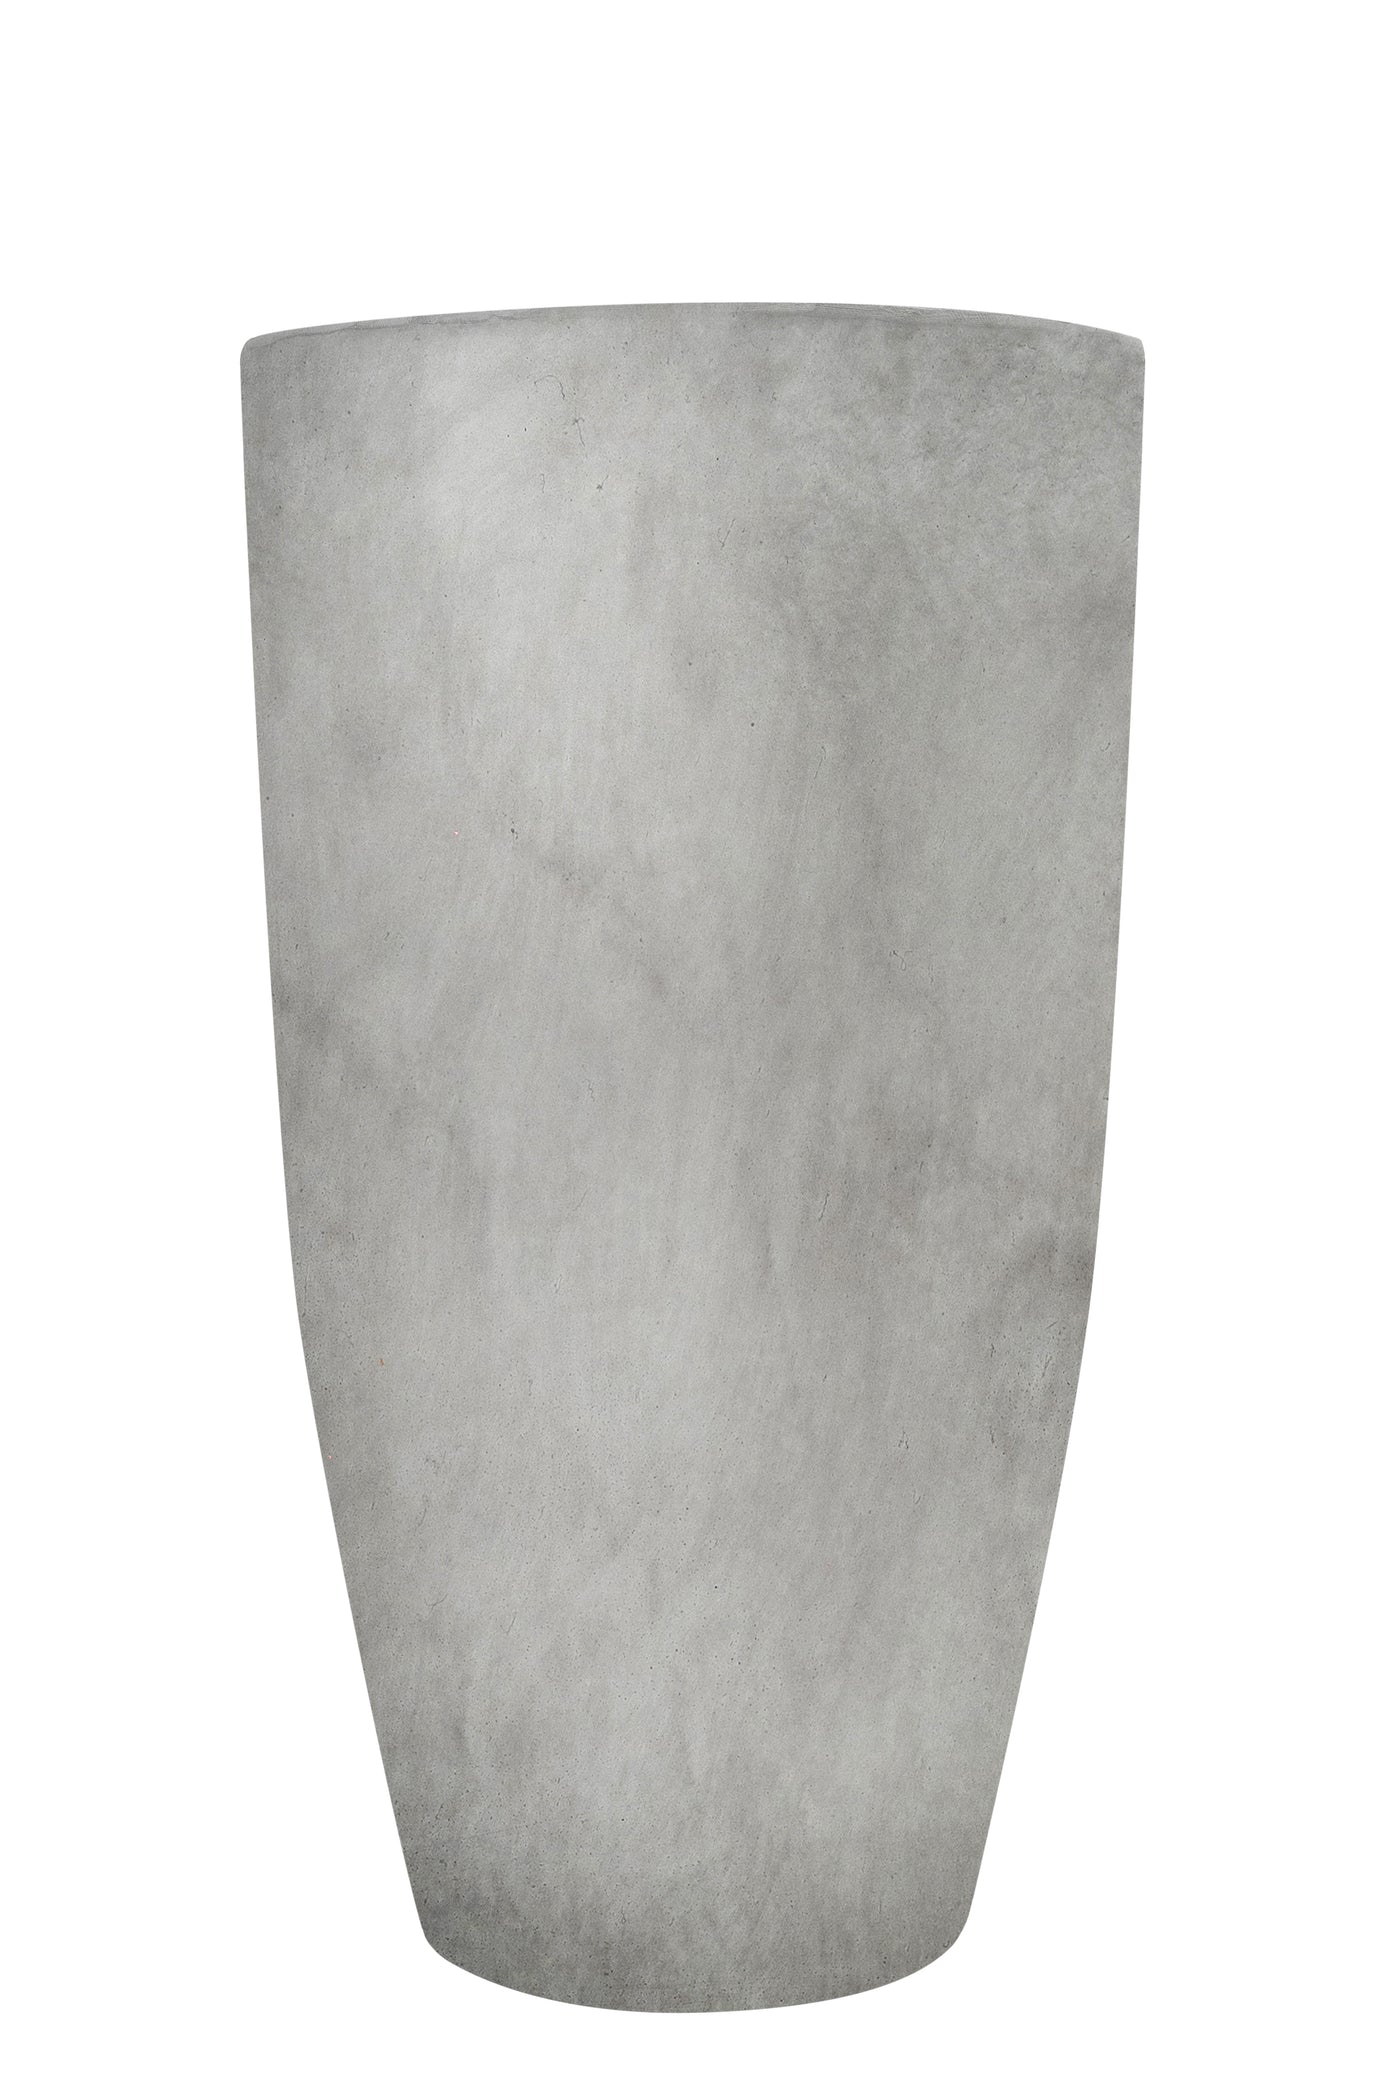 Ghiveci pt plante D34xH60 cm. ciment alb